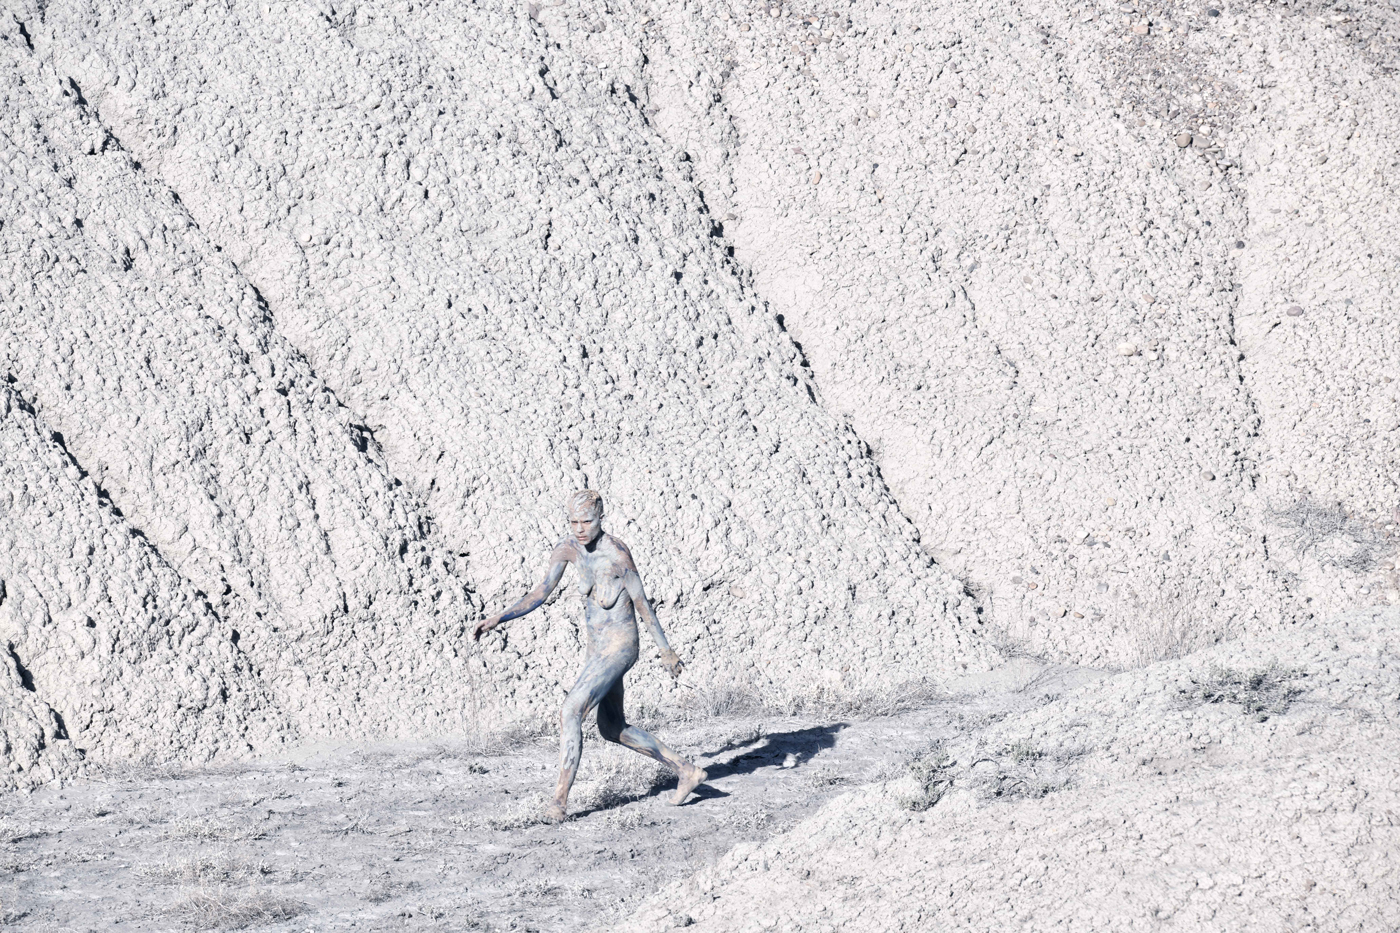 Une femme marche nue, au pied d'une montage. Le sol, la montagne et son corps sont recouvert d'une matière poudreuse et blanchâtre comme de la craie.